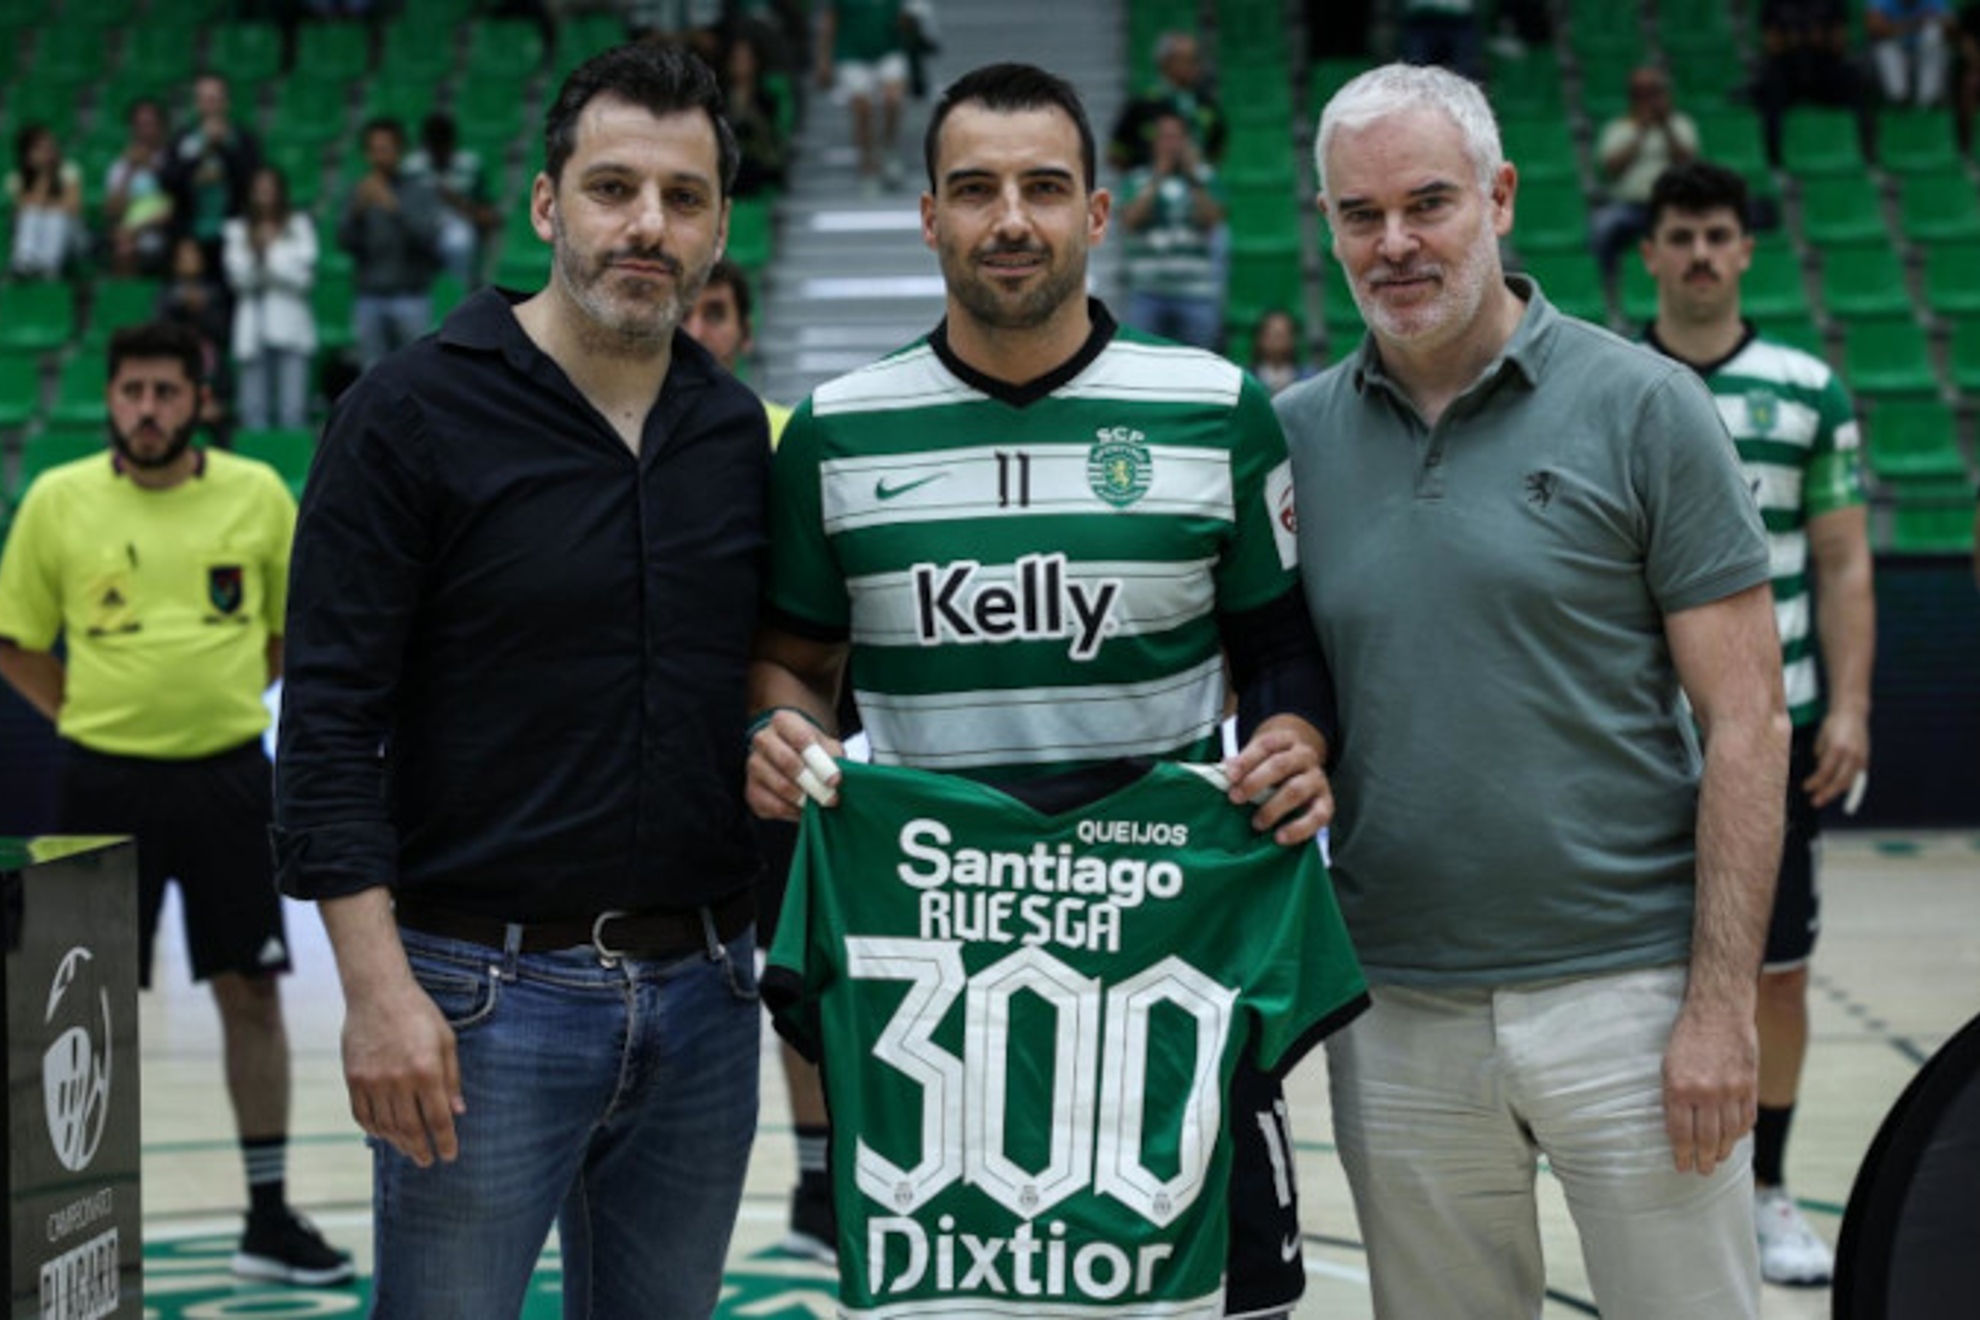 Homenaje al central español Carlos Ruesga tras cumplir 300 partidos con el Sporting /